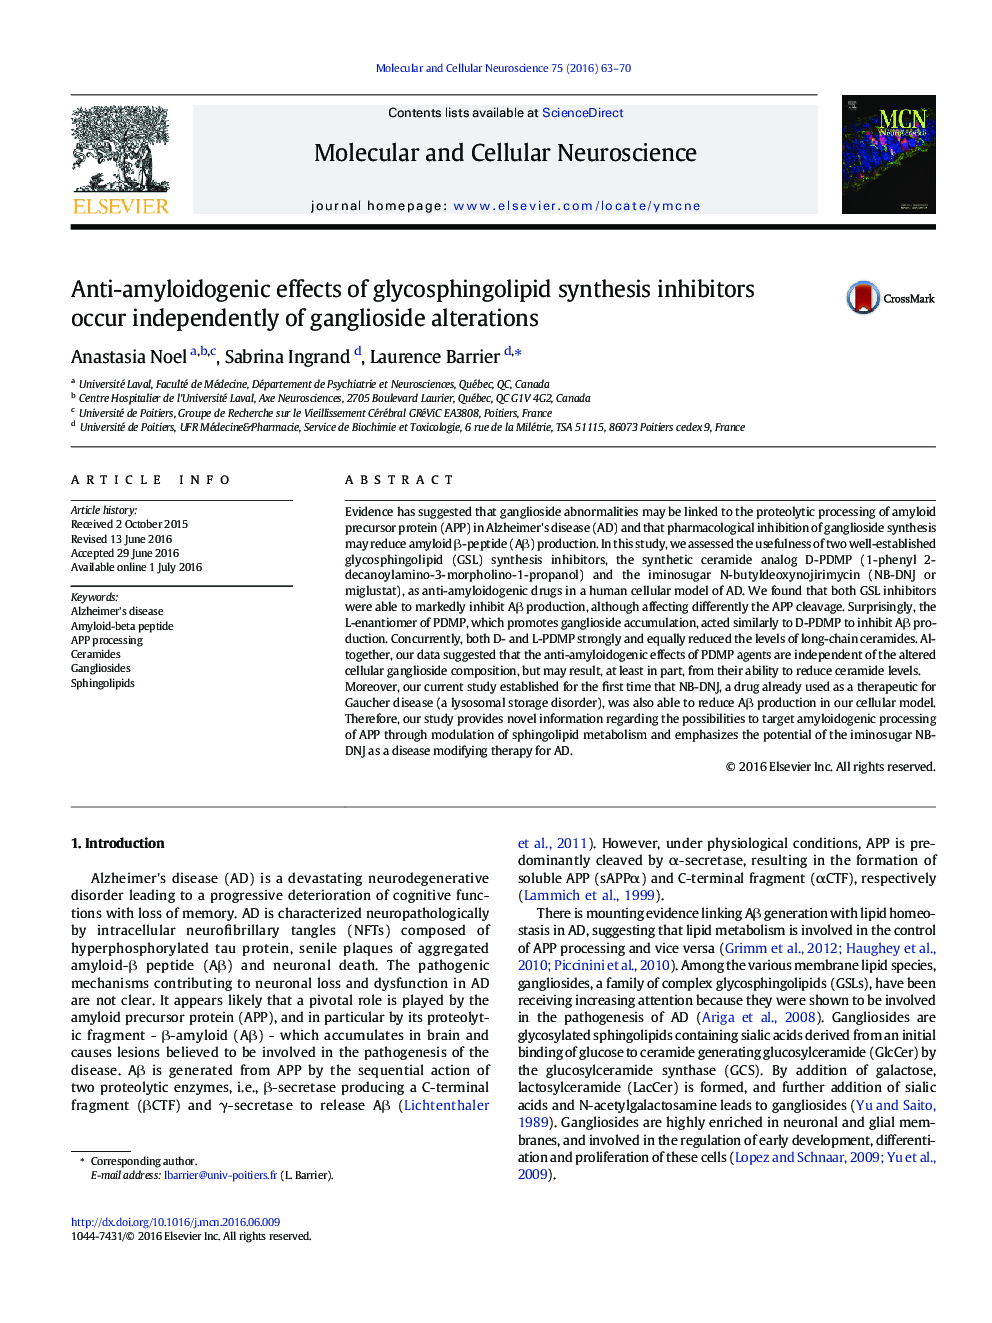 اثرات ضد آمیلوئیدیوژناز مهارکننده های سنتز گلیسفسنگلیپید مستقل از تغییرات گانگلیوزید 